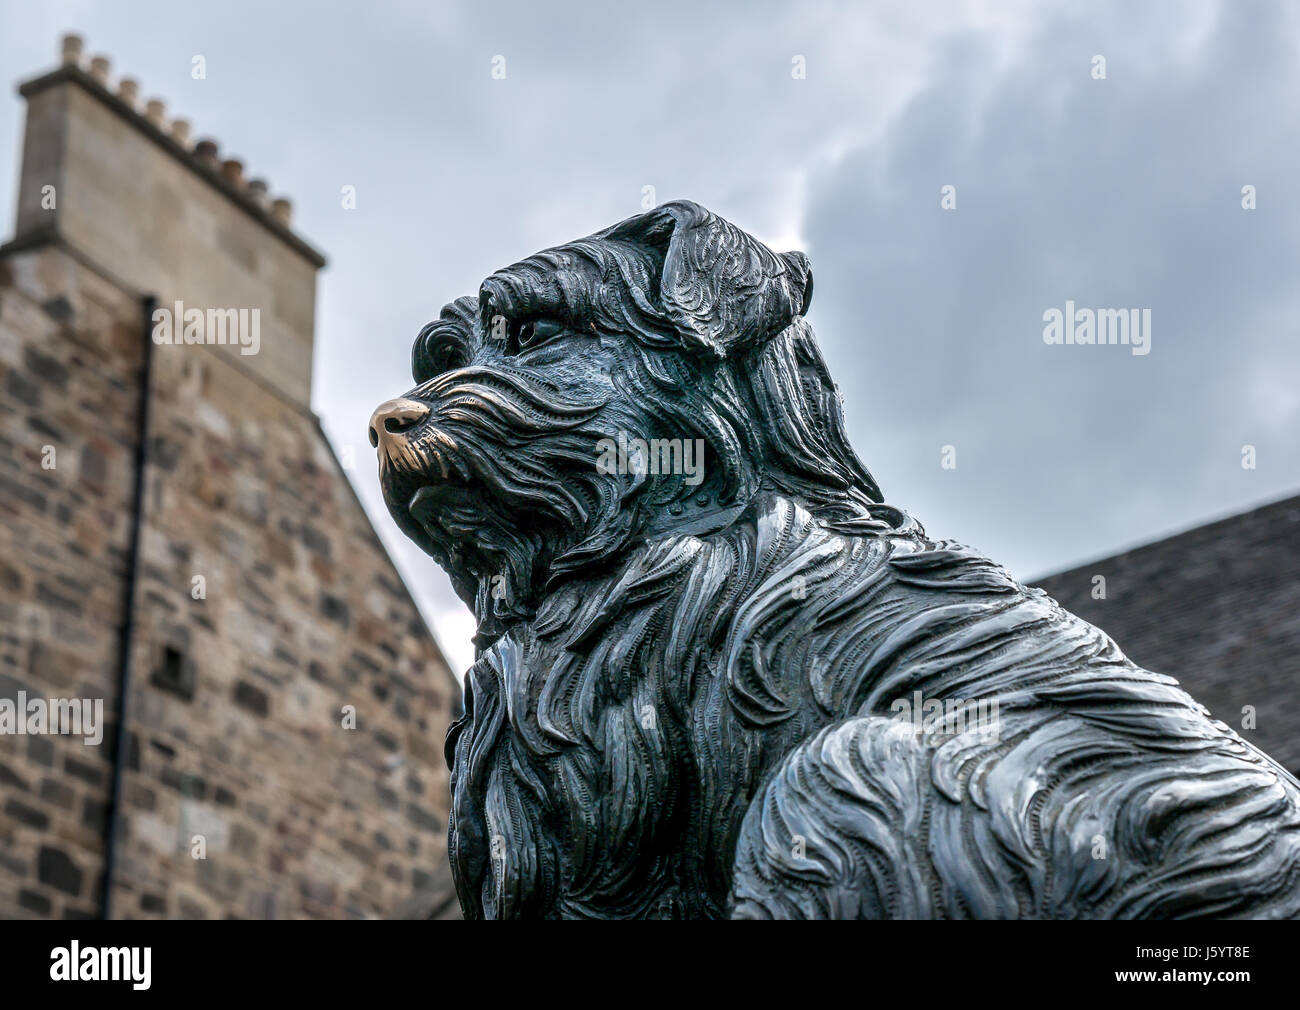 Nahaufnahme des Hundes Joybergman Bobby Bronzestatue von William Brodie und alten Mietshaus, Edinburgh, Schottland, Großbritannien, mit viel Glück glänzende Nase gerieben Stockfoto